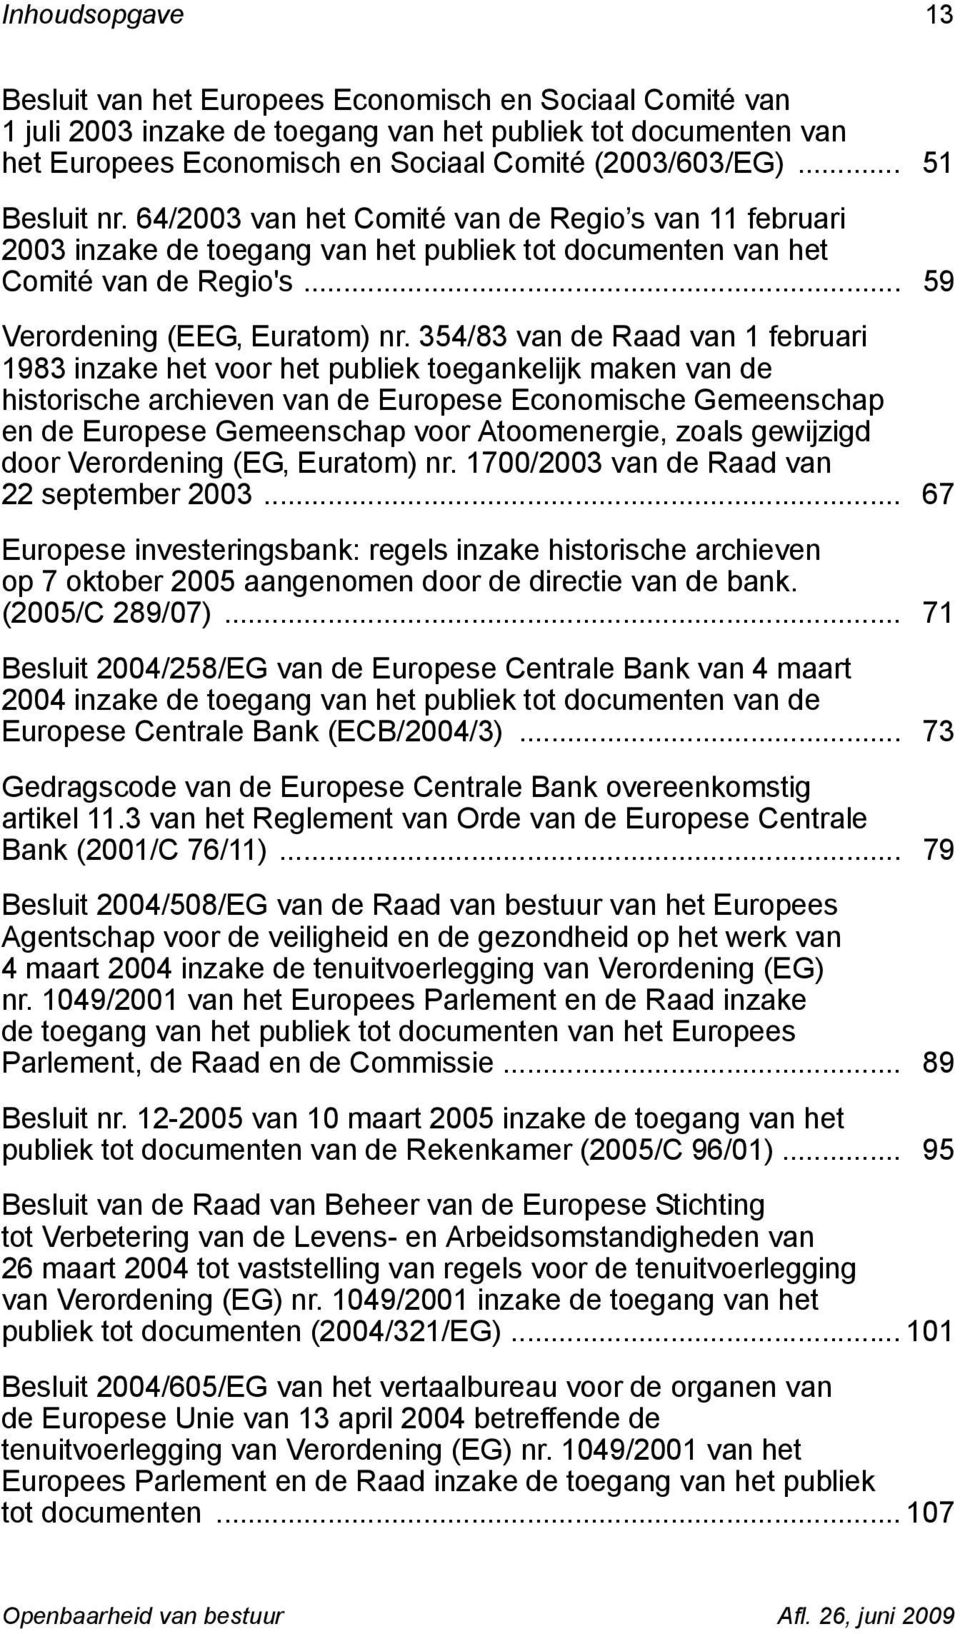 354/83 van de Raad van 1 februari 1983 inzake het voor het publiek toegankelijk maken van de historische archieven van de Europese Economische Gemeenschap en de Europese Gemeenschap voor